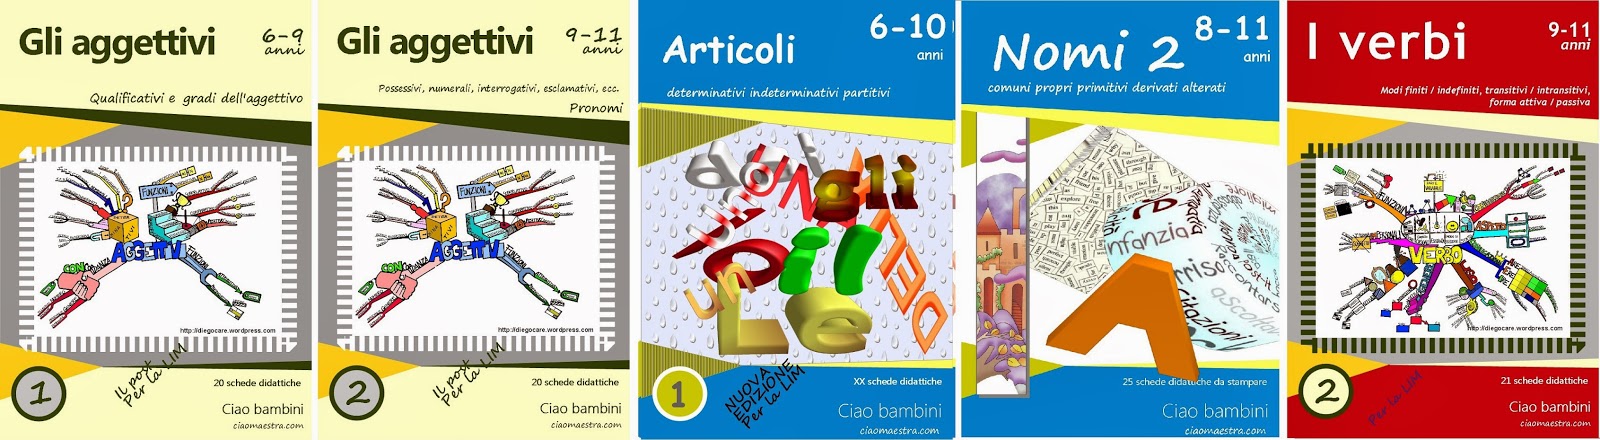 http://ciaomaestra.it/public/ebook/demo_aggettivi_2.pdf